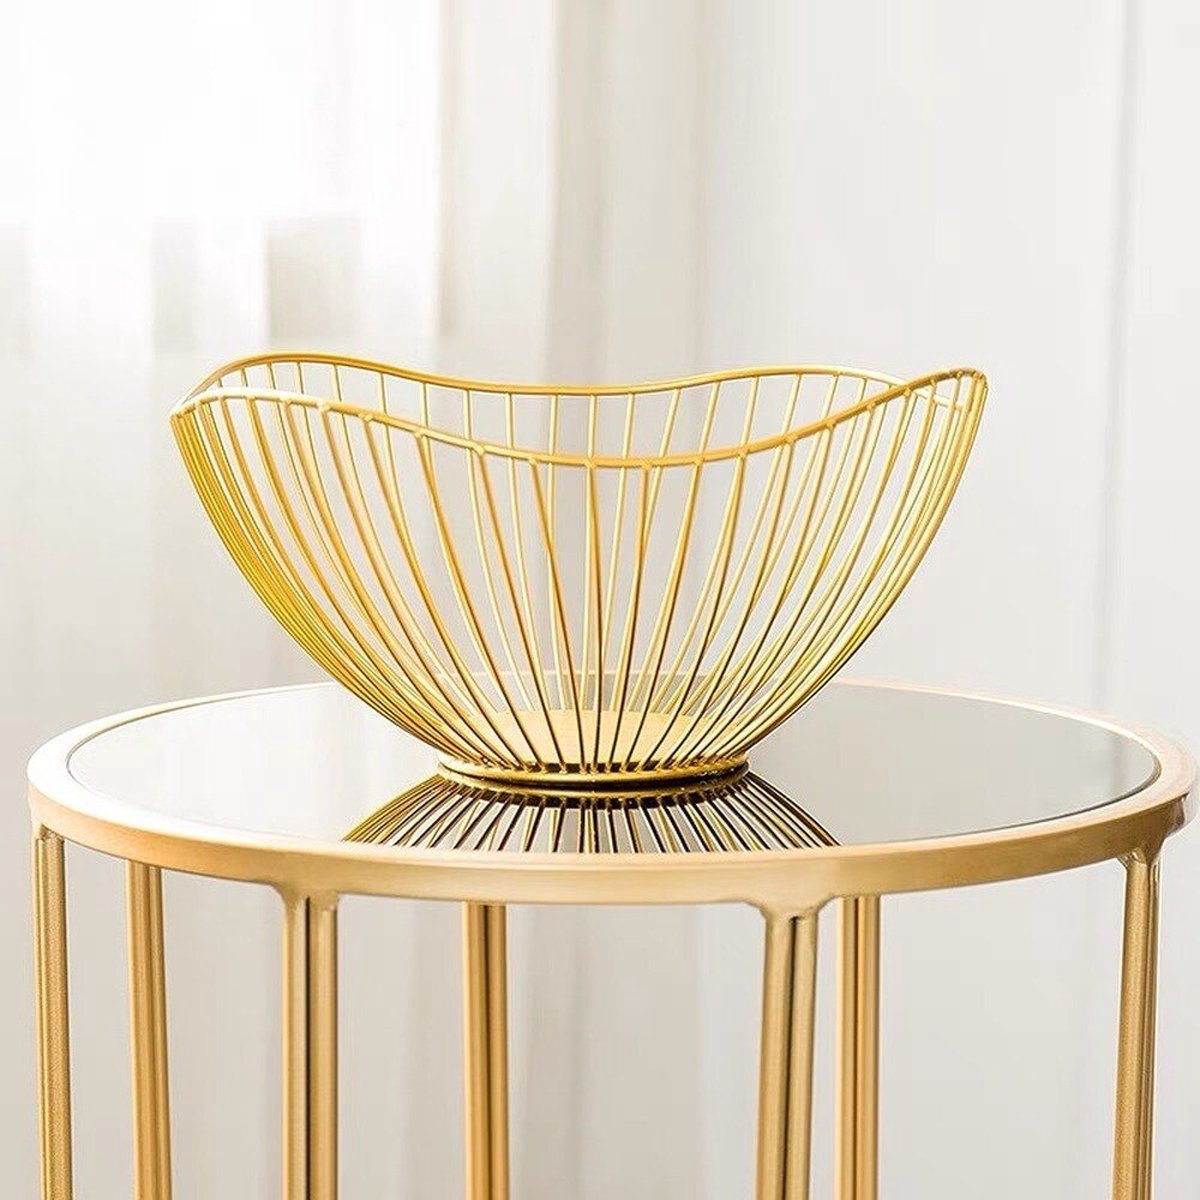 BaykaDecor - Luxe Lotus Fruitschaal - Design Schaal - Cadeau - IJzeren Keuken Decor - Fruit Bowl - Woondecoratie - Goud - 26 cm